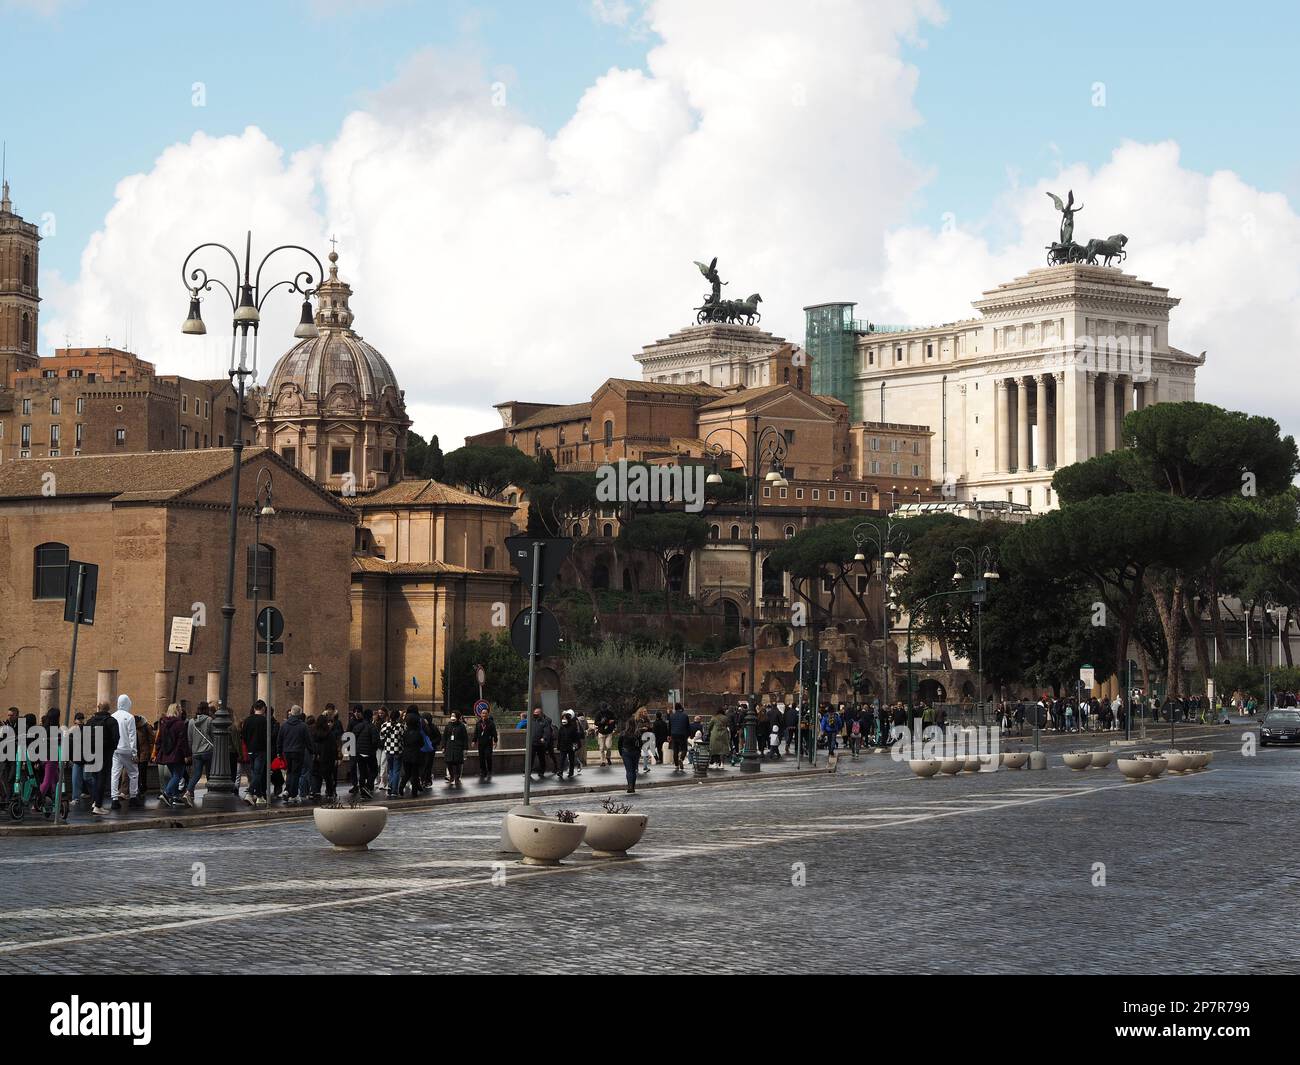 Via dei fori imperiali nel centro storico di Roma, con molti turisti a piedi sul marciapiede. Foto Stock